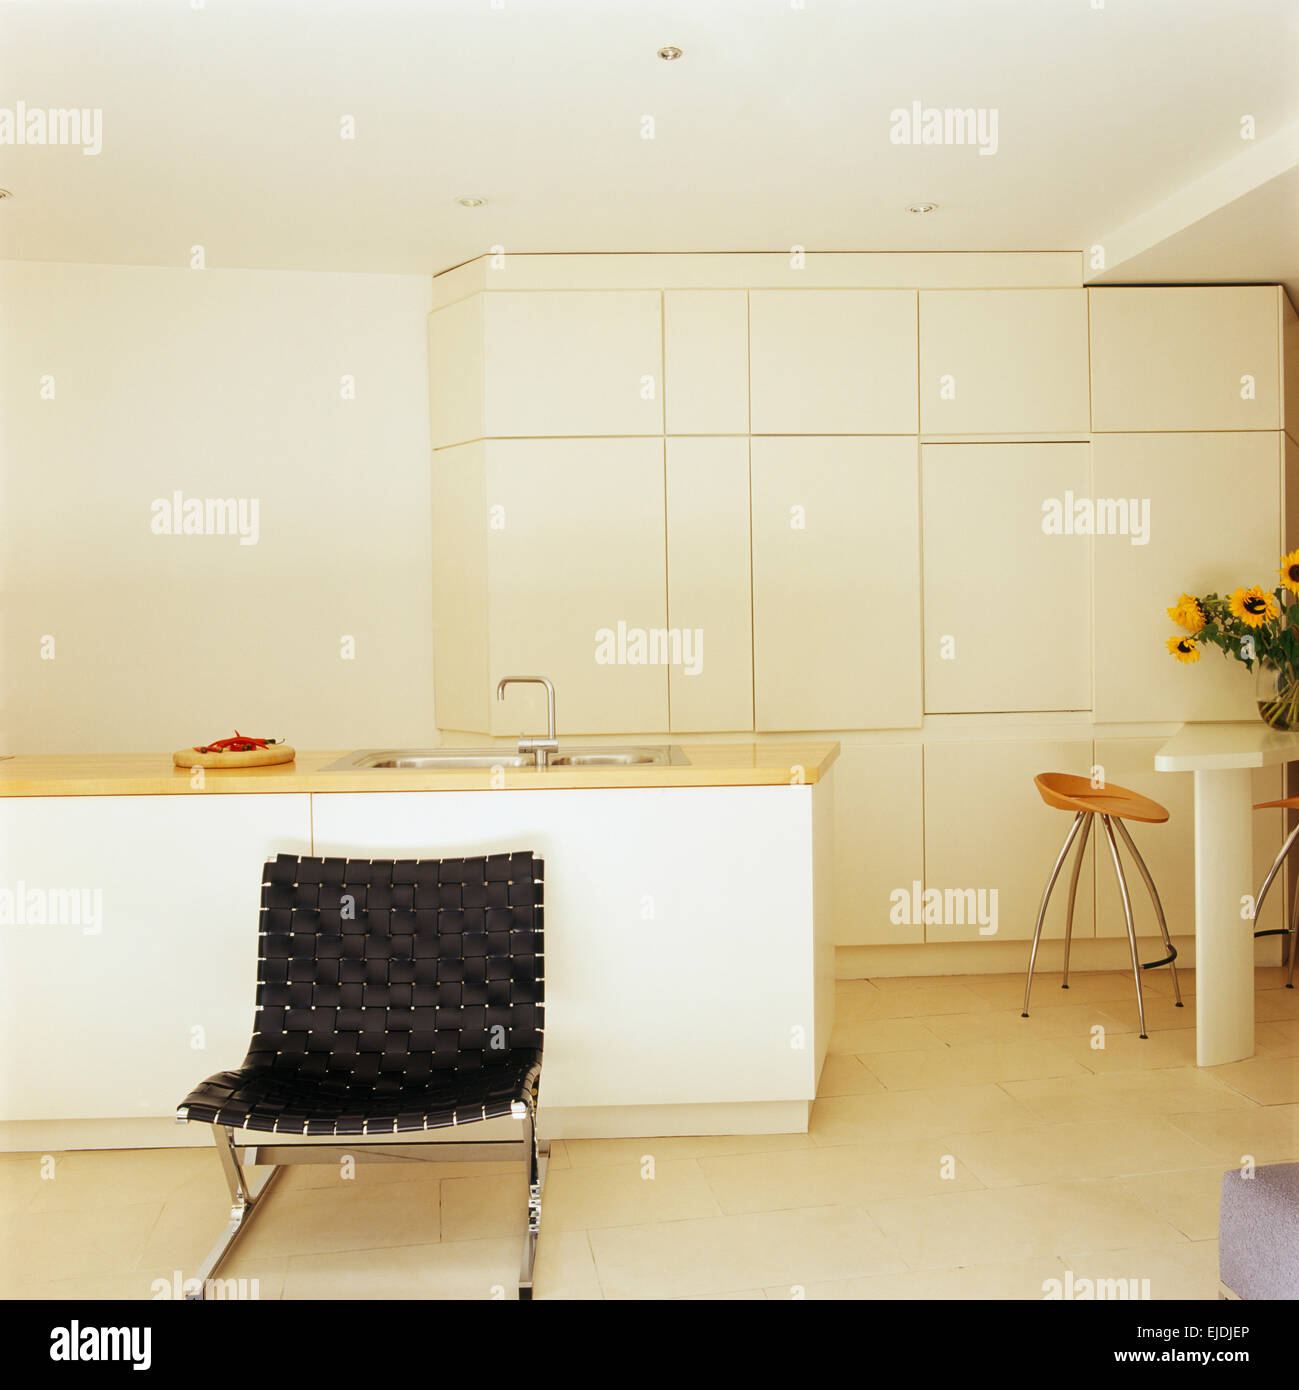 Schwarzen geflochtenen Leder und Chrom Stuhl in modernen weißen minimalistische Küche mit Wand optimierte Lagerung Schränke Stockfoto